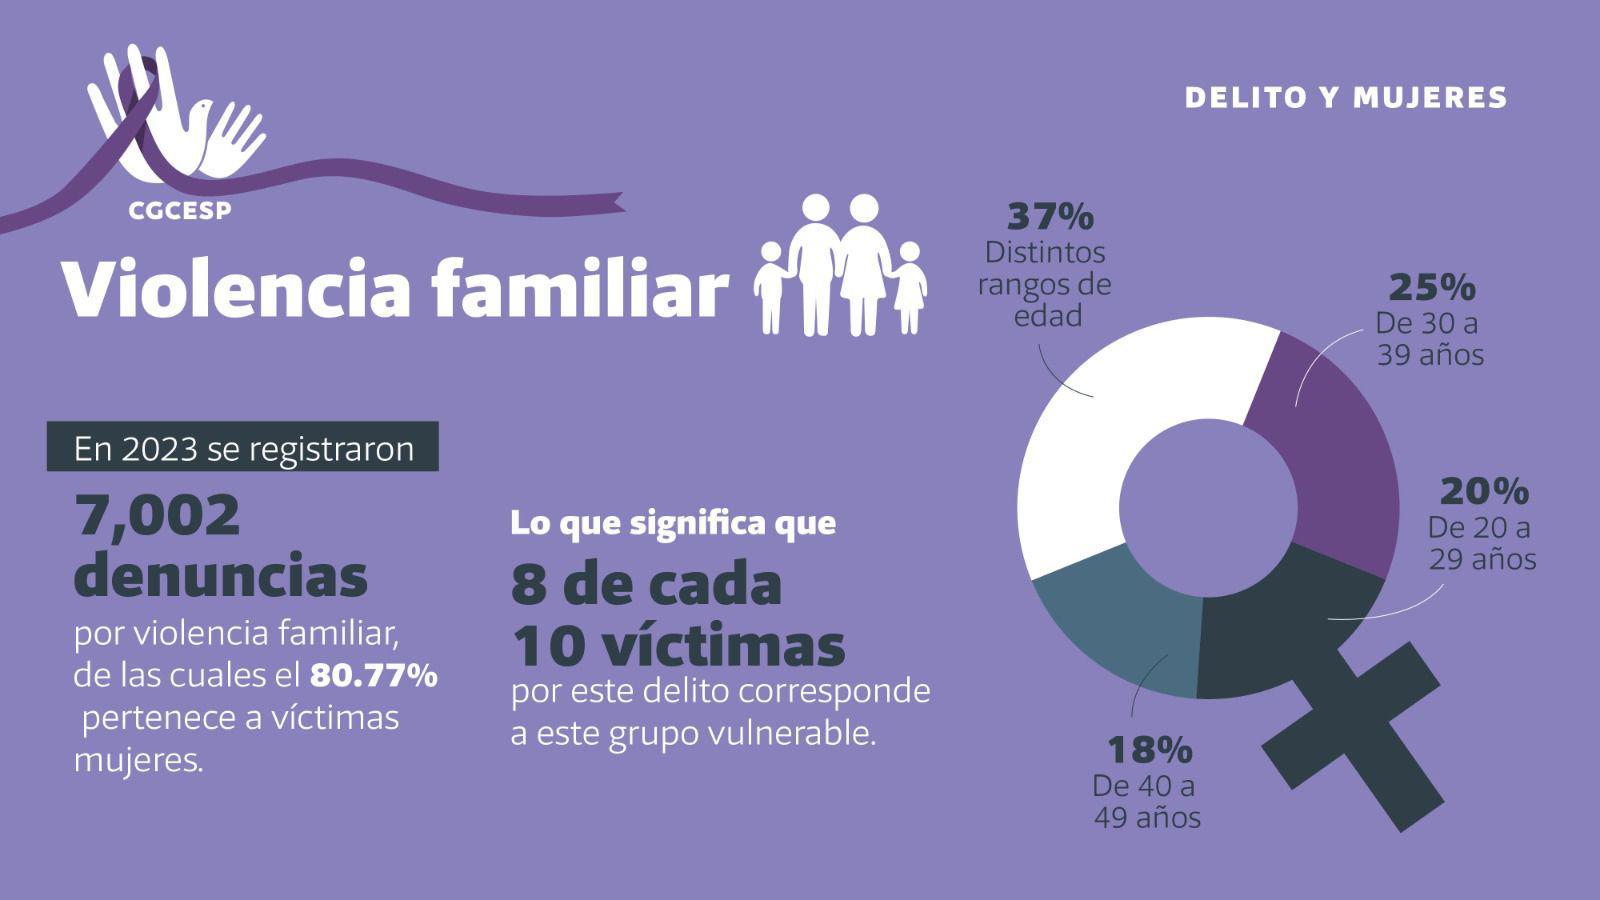 $!Violencia familiar, feminicidio, violación y lesiones, los delitos que más afectan a las mujeres en Sinaloa